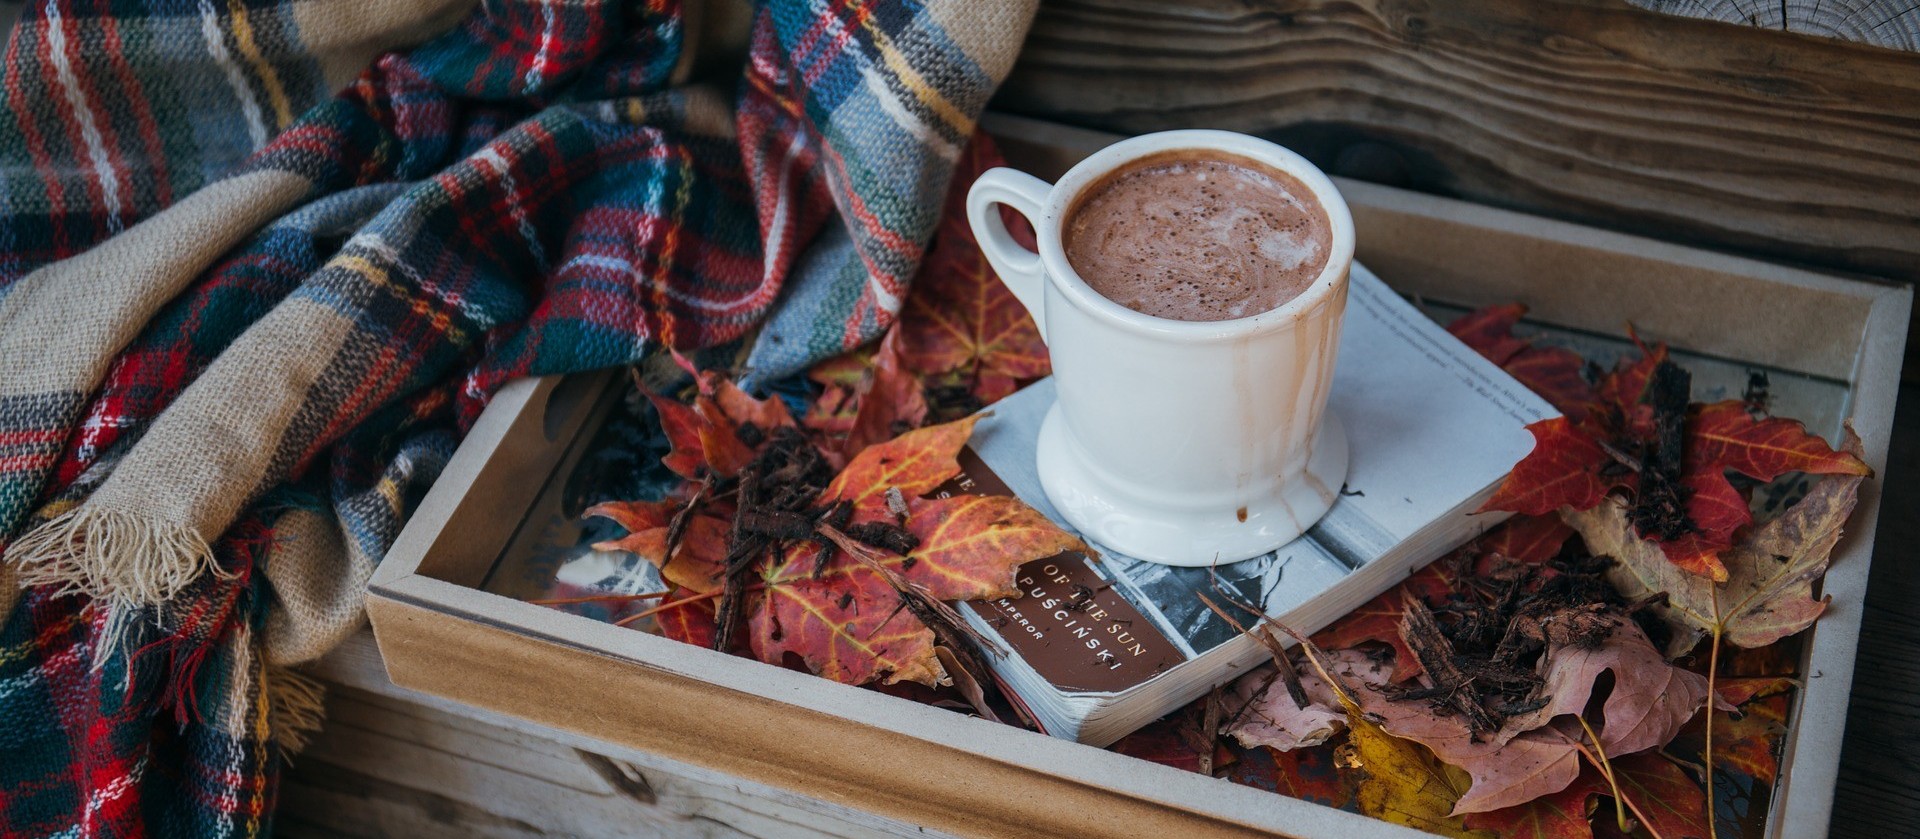 Para esses dias frios, a sugestão é um delicioso chocolate quente